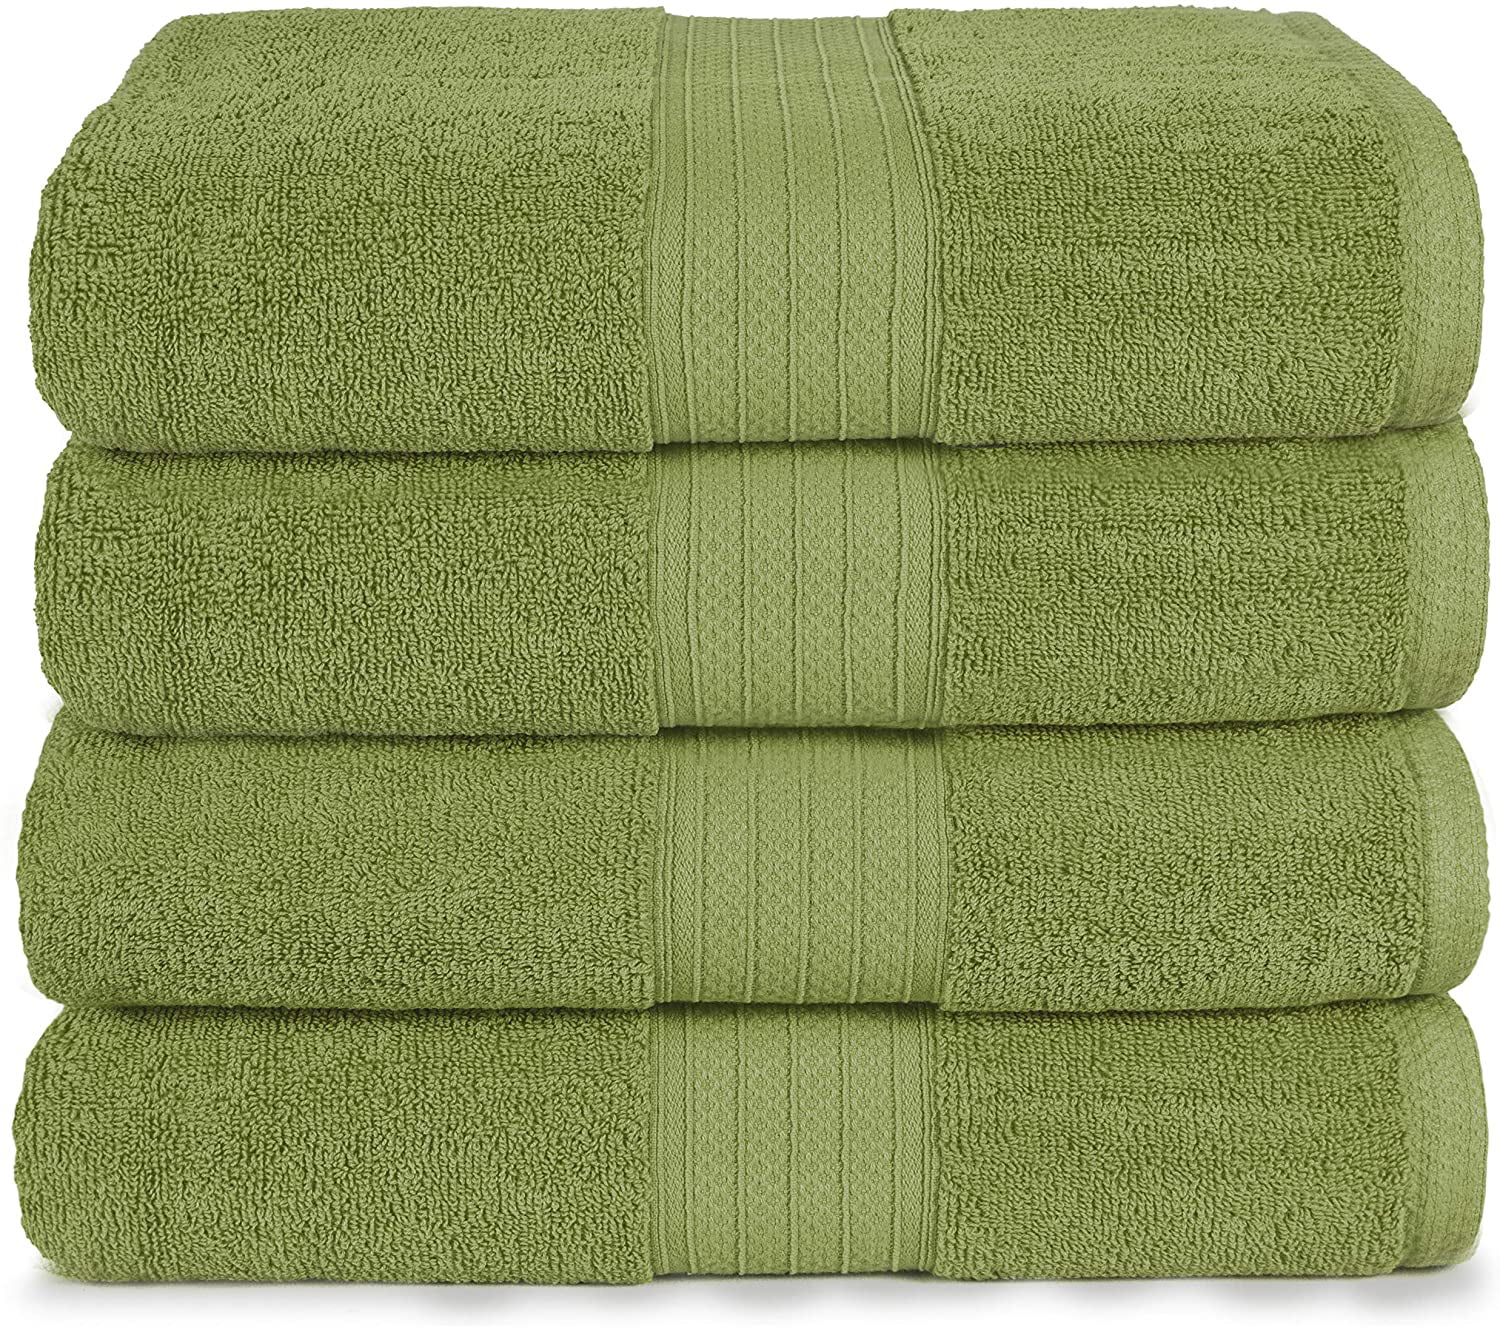 Details about   Textured Bath Towel Set 6 pc White Borders Plush Combed Cotton Towels 3 Colors 